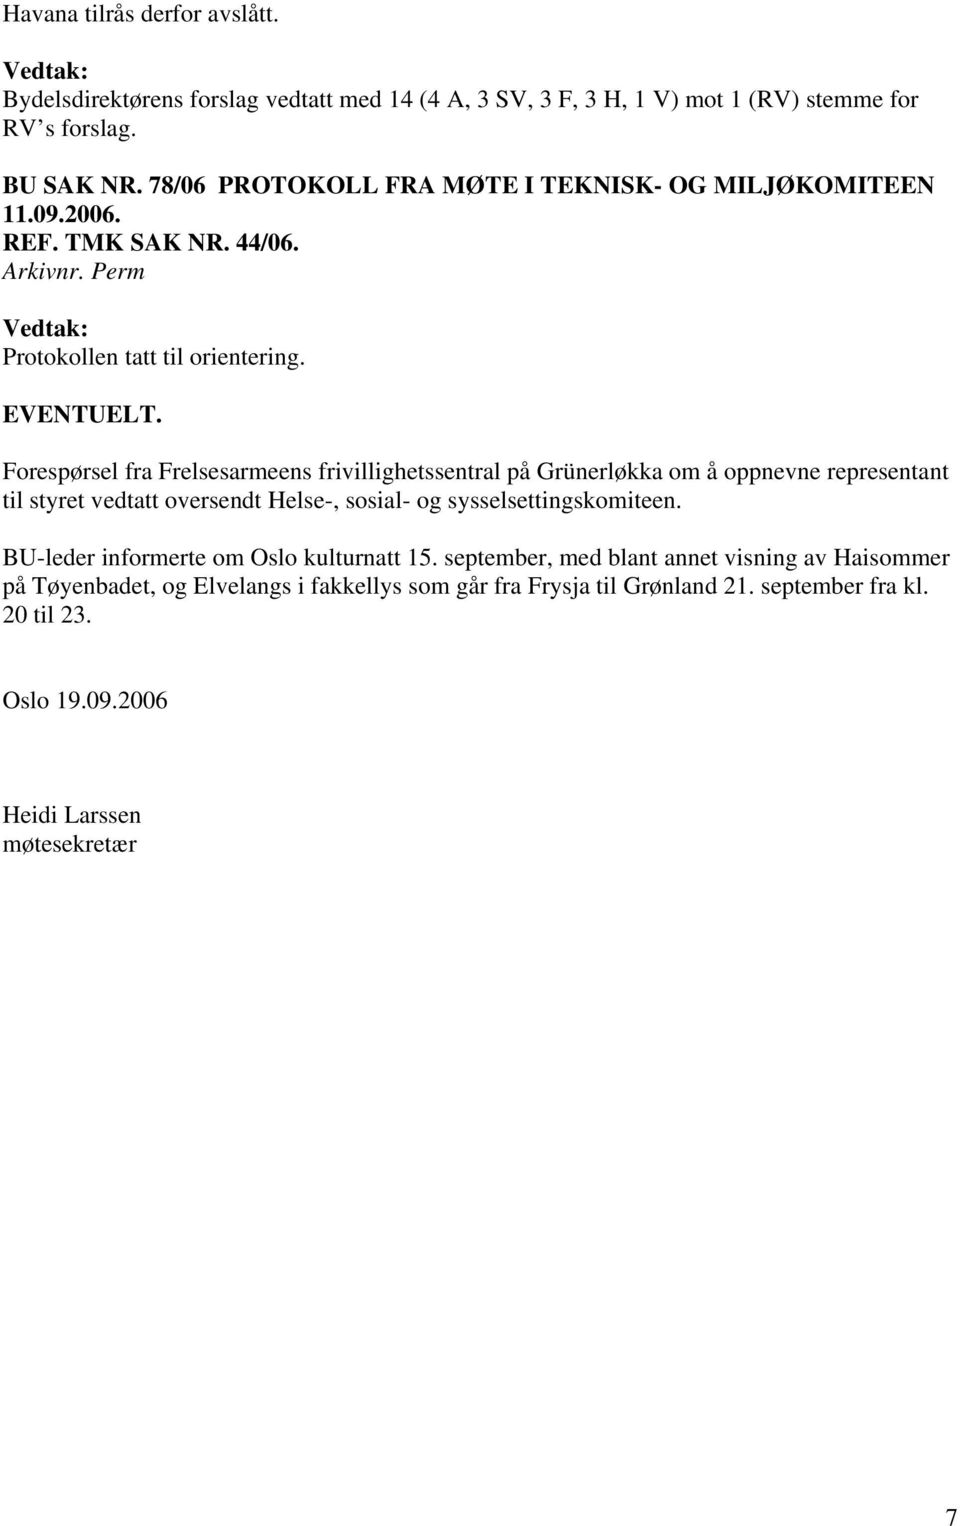 Forespørsel fra Frelsesarmeens frivillighetssentral på Grünerløkka om å oppnevne representant til styret vedtatt oversendt Helse-, sosial- og